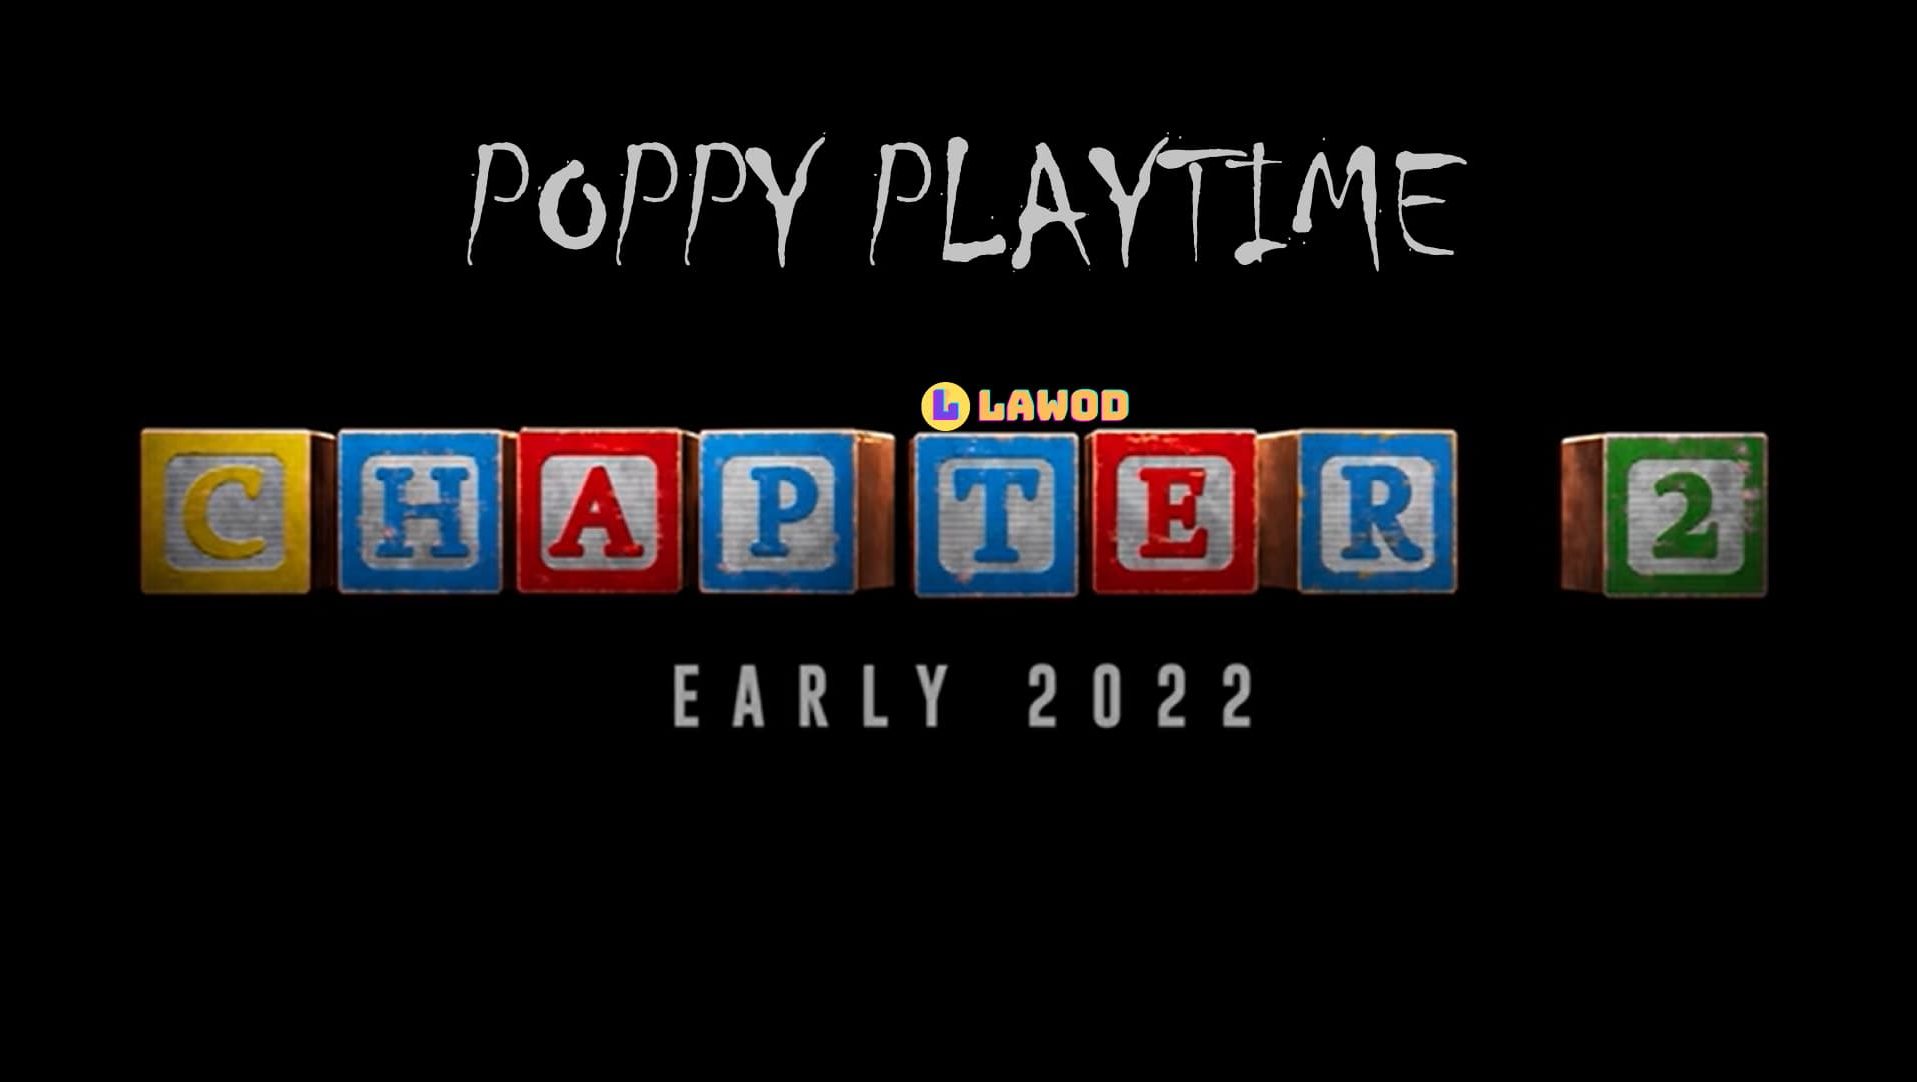 Poppy playtime глент 2 часть